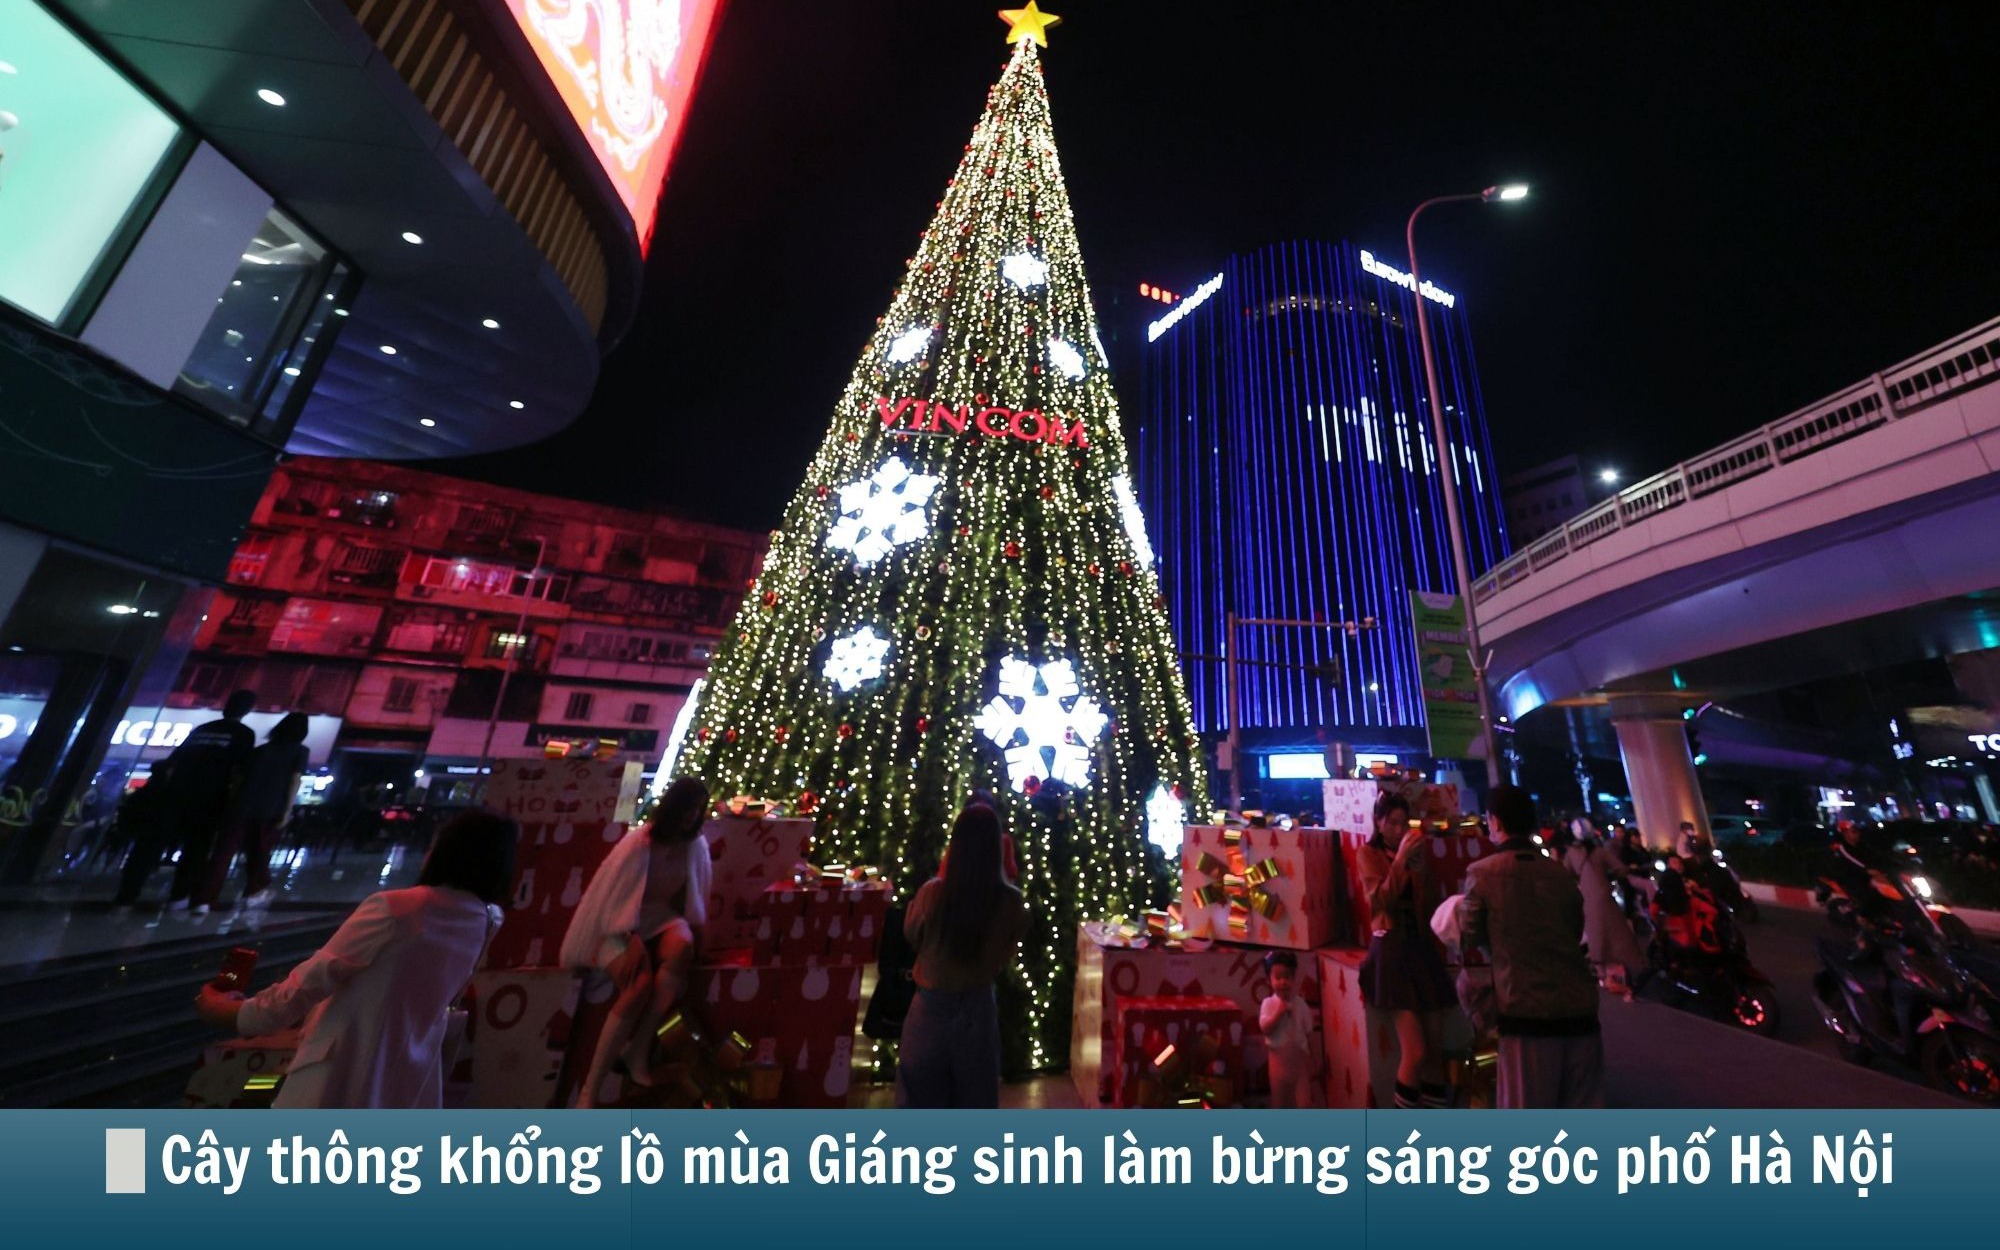 Hình ảnh báo chí 24h: Hàng loạt cây thông khổng lồ mùa Giáng sinh làm bừng sáng góc phố Hà Nội